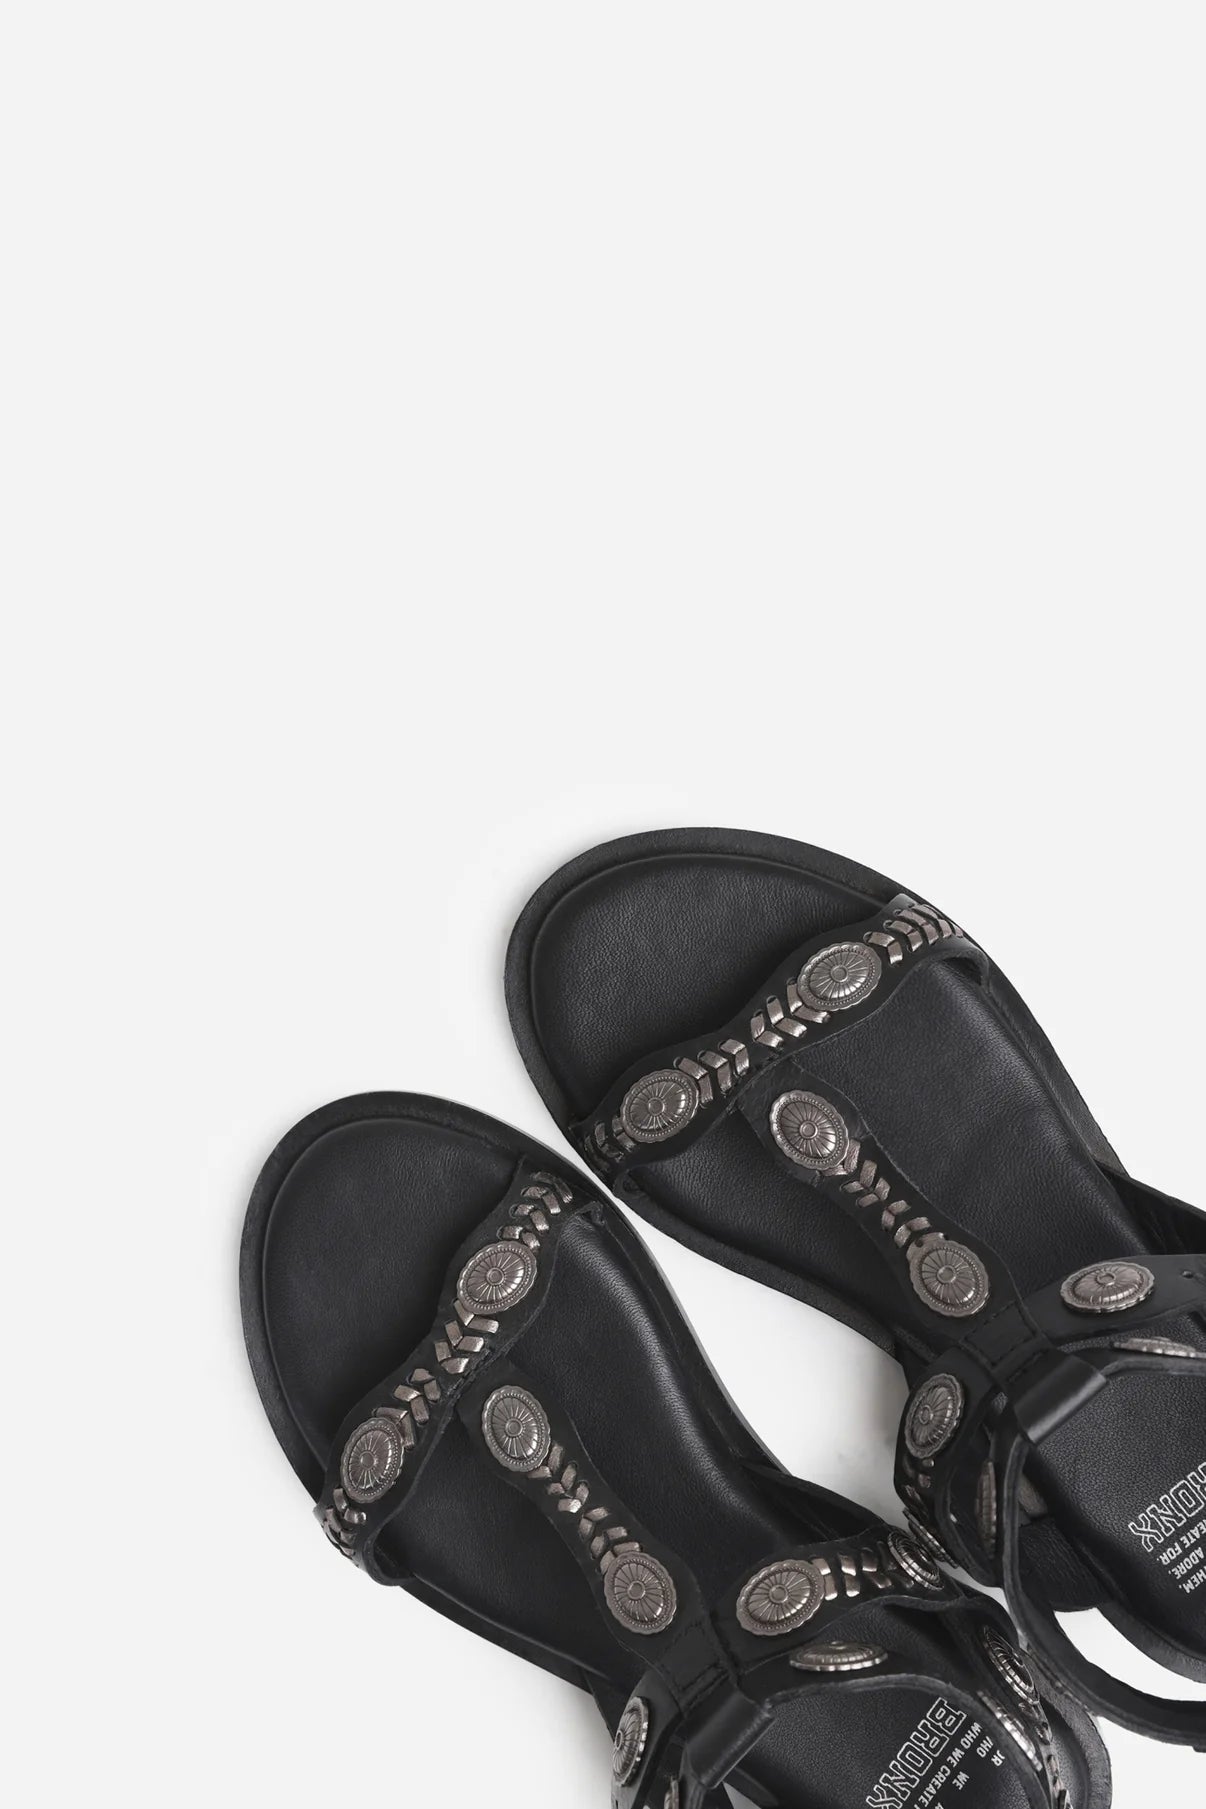 Sky-ler black sandals